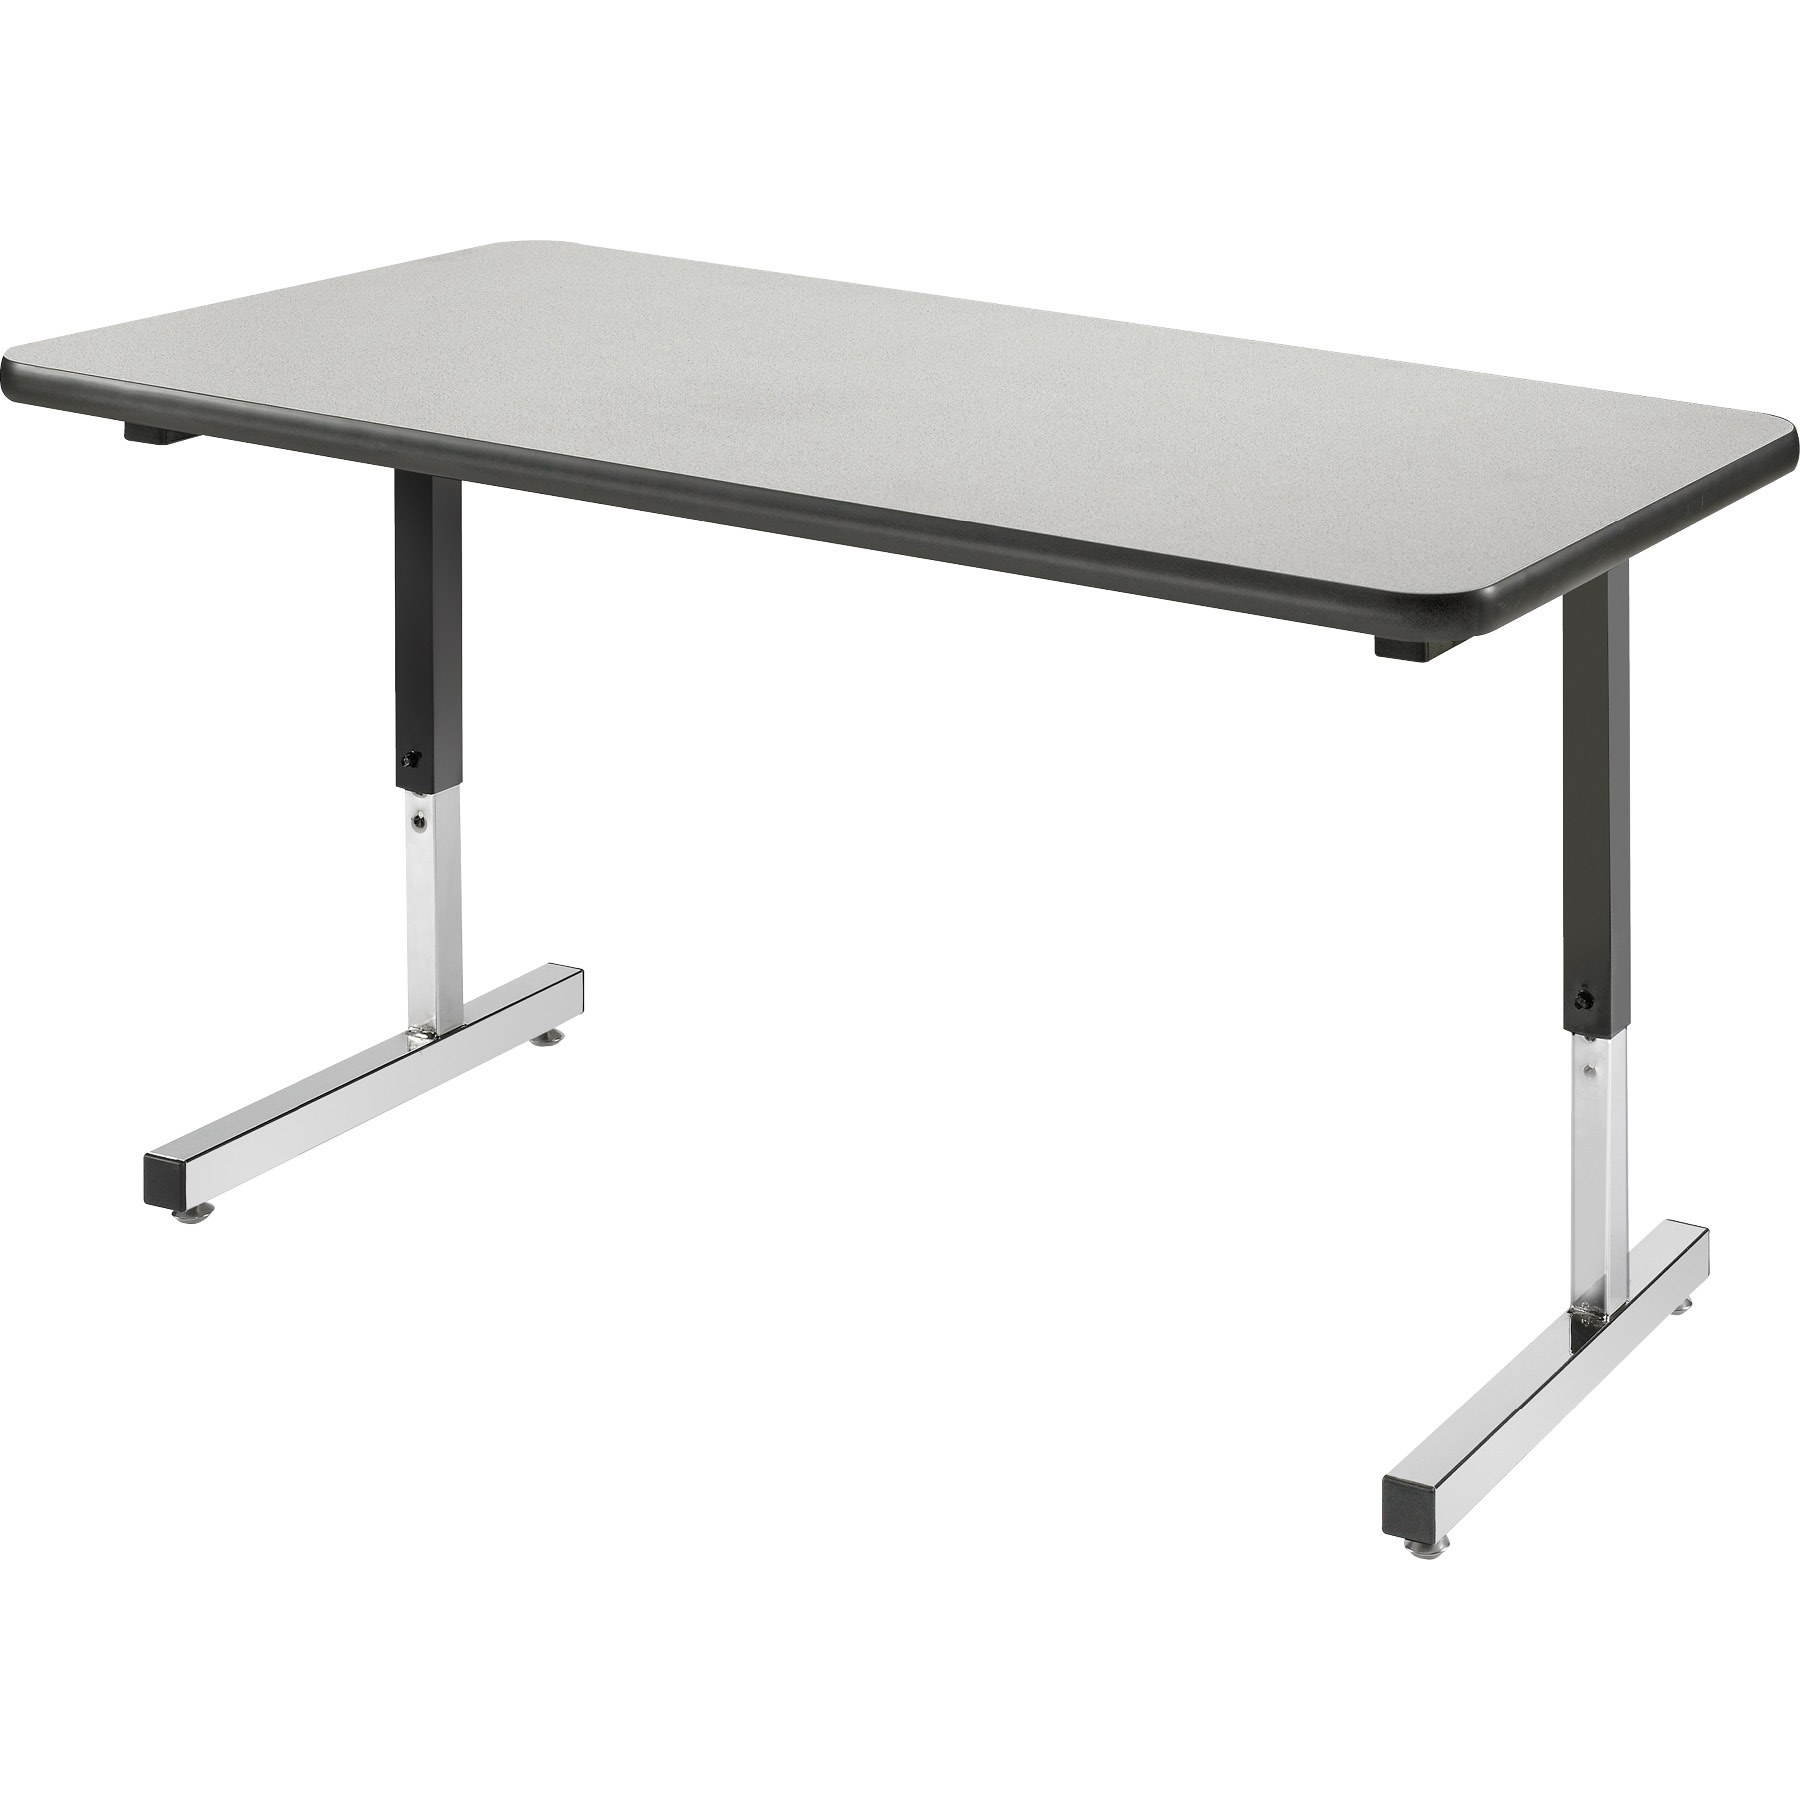 3983 Omnia Two-Student Desk